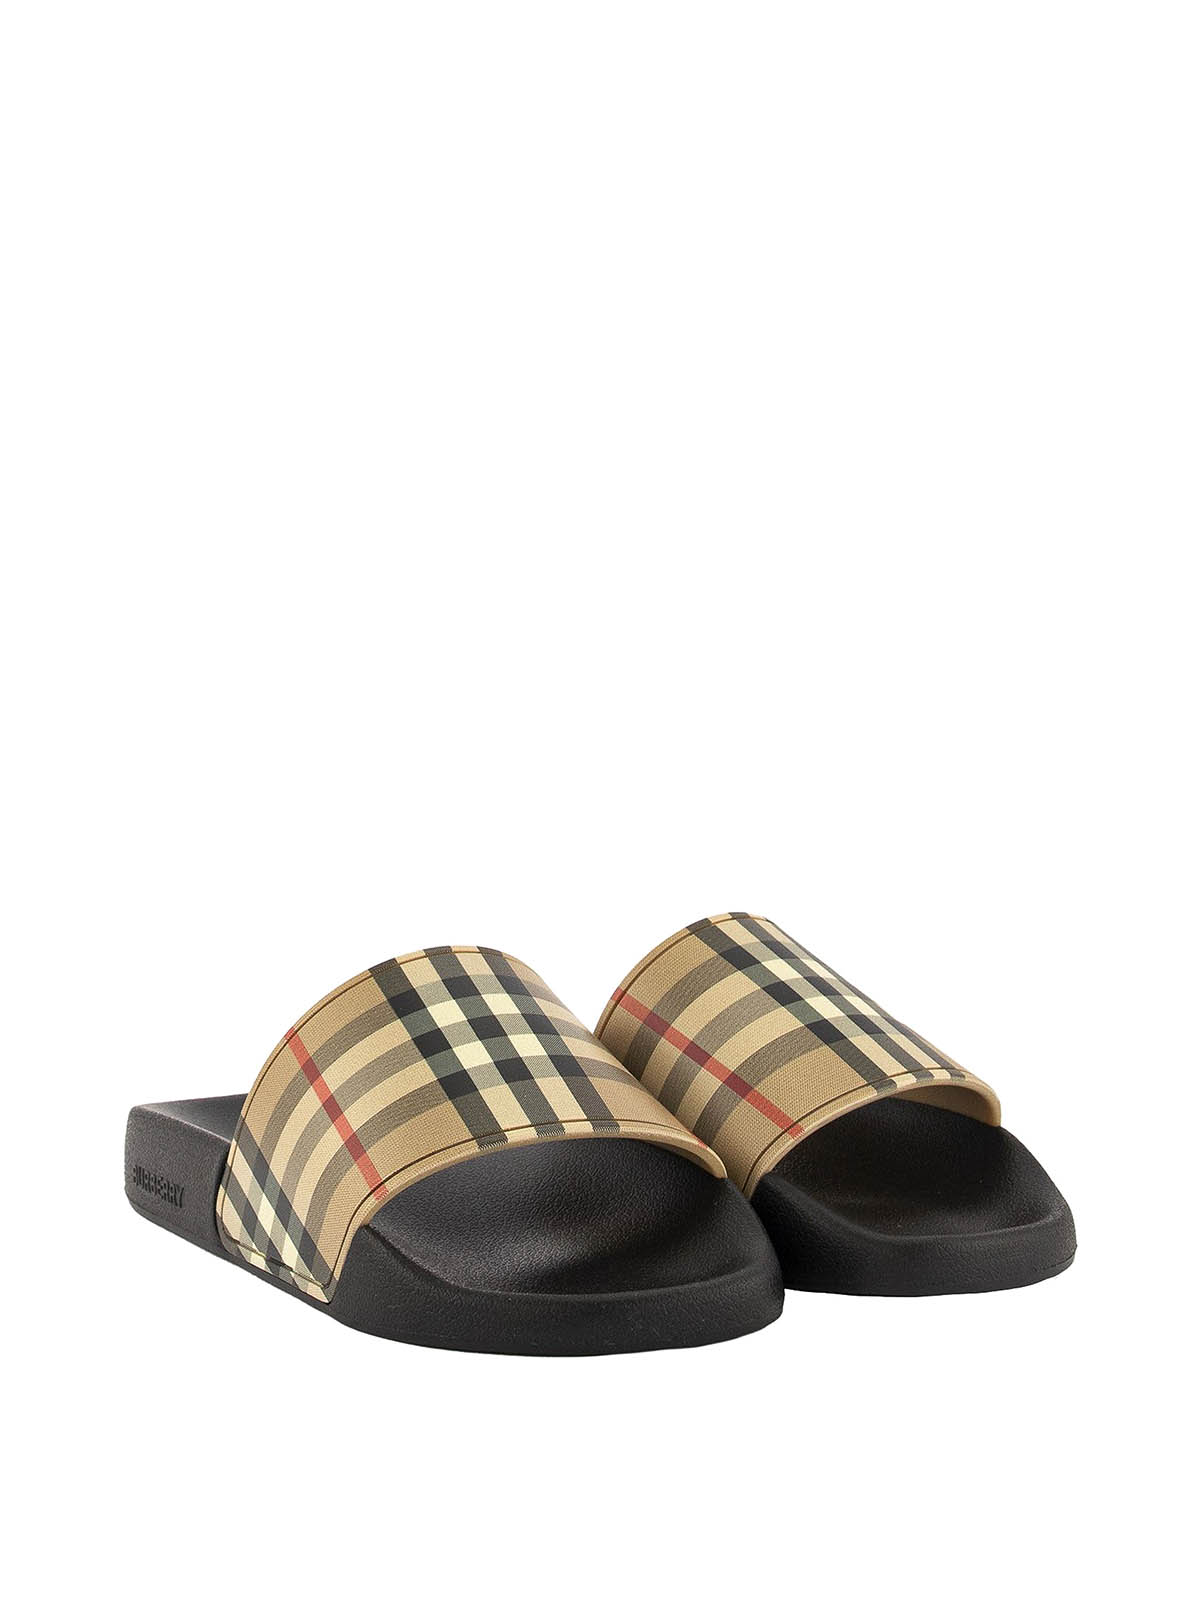 Flip flops Burberry - Vintage Check slide sandals - 8024232 